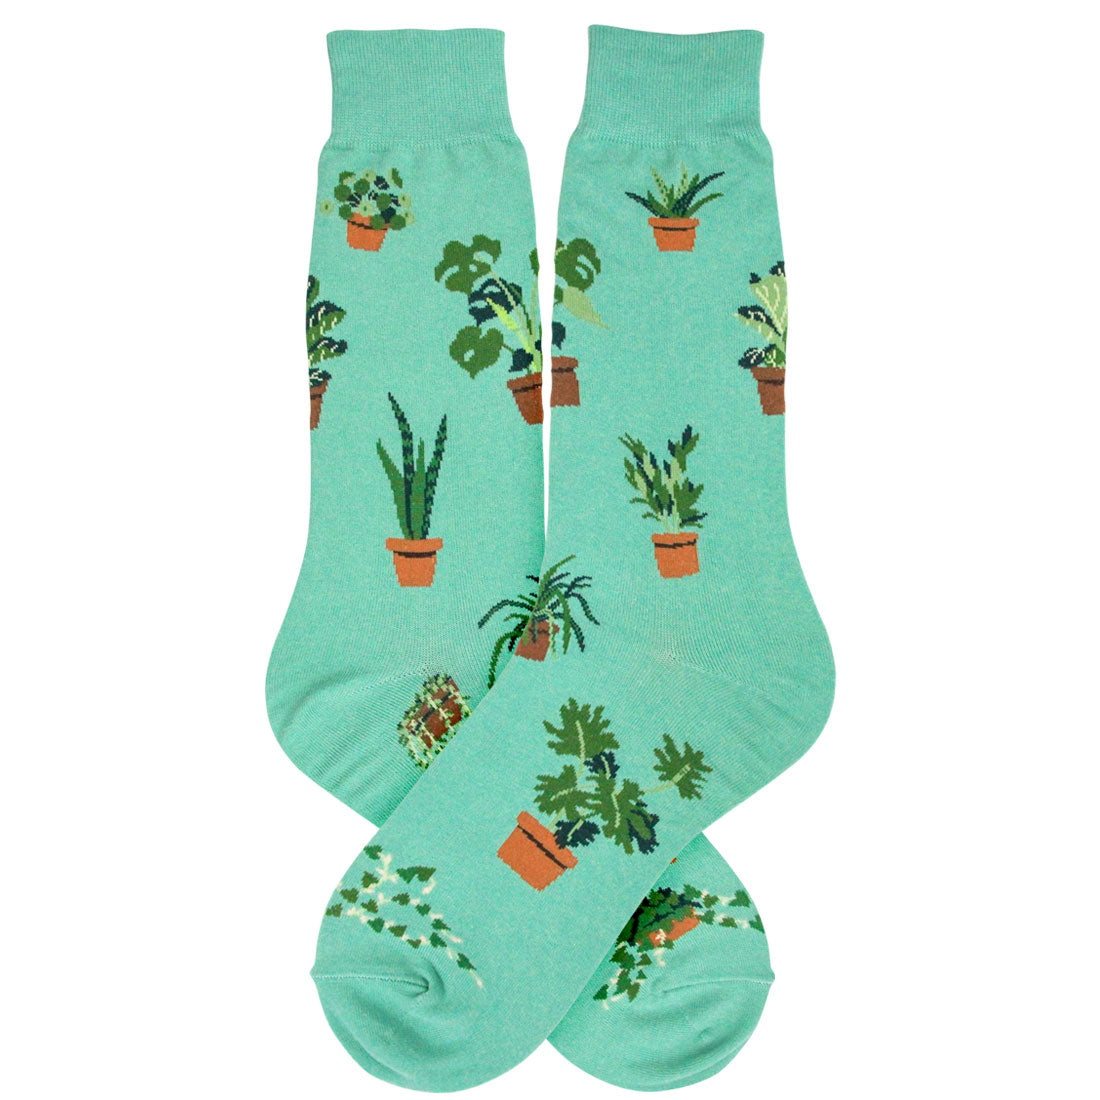 Plant Dude Socks - Large Sizing